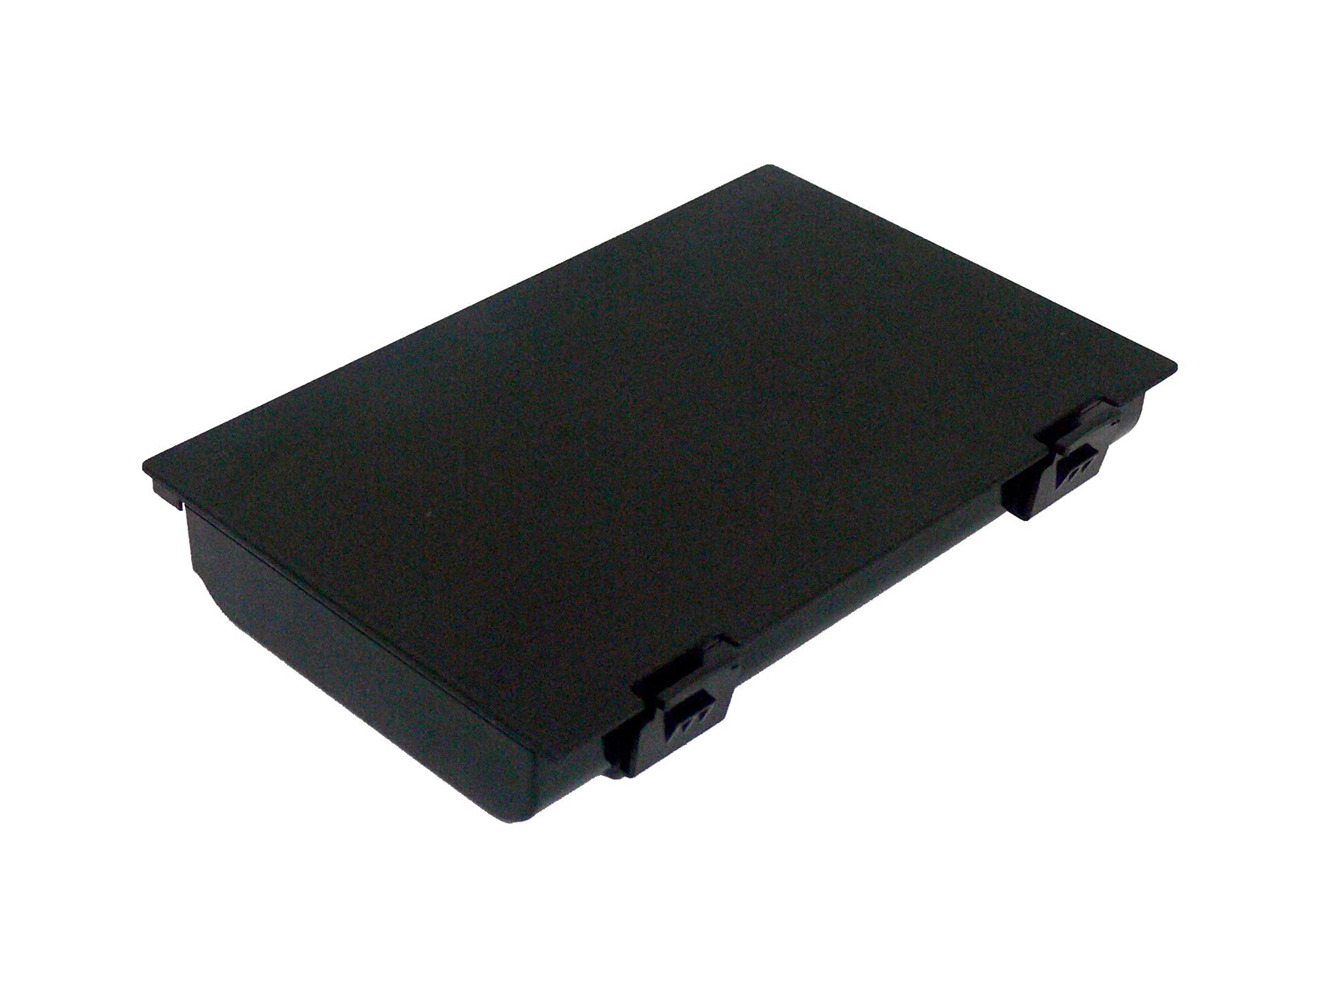 Sostituzione compatibile per batteria del laptop FUJITSU-SIEMENS CELSIUS H250, LifeBook E8410, Lifebook E8420